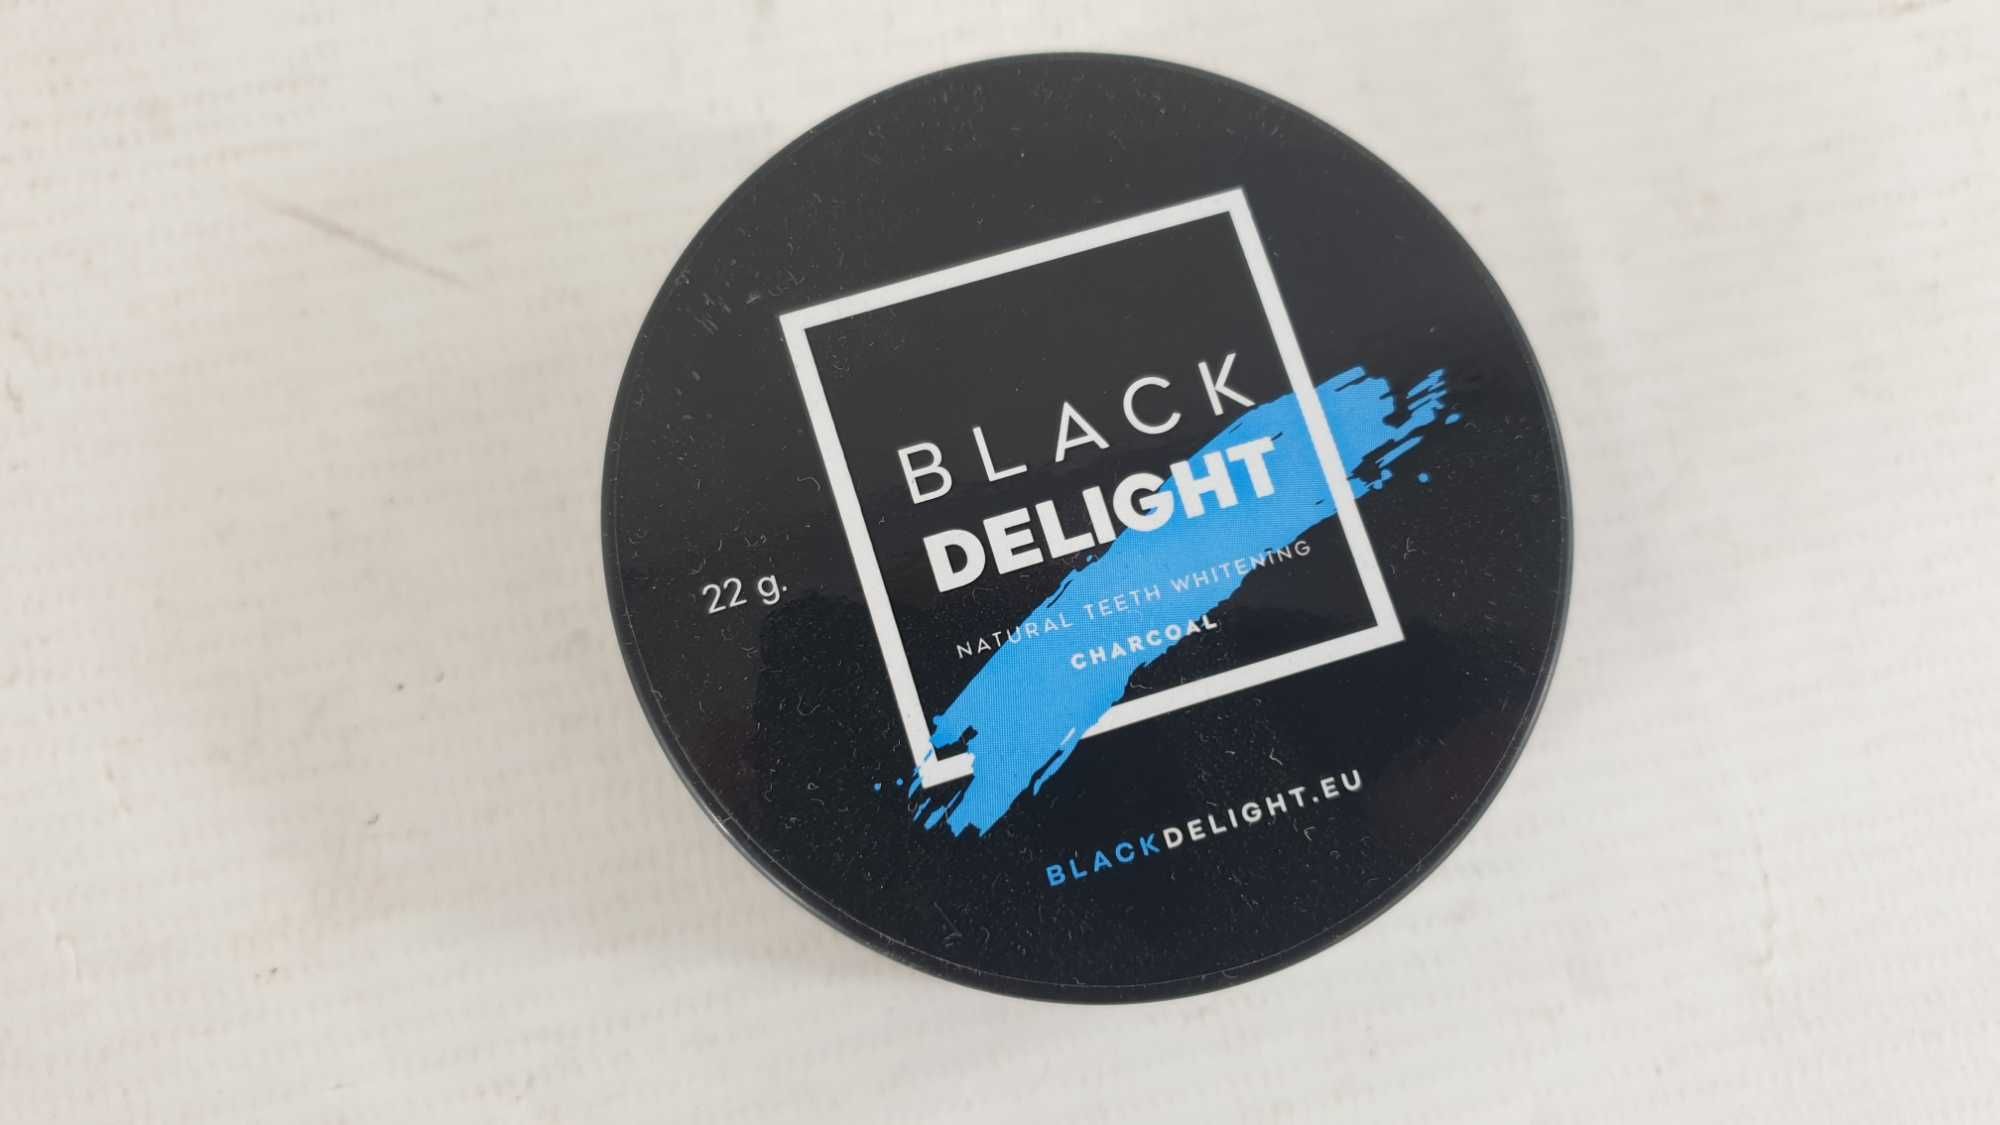 BLACK delight czarny wybielający węgiel do zębów 22